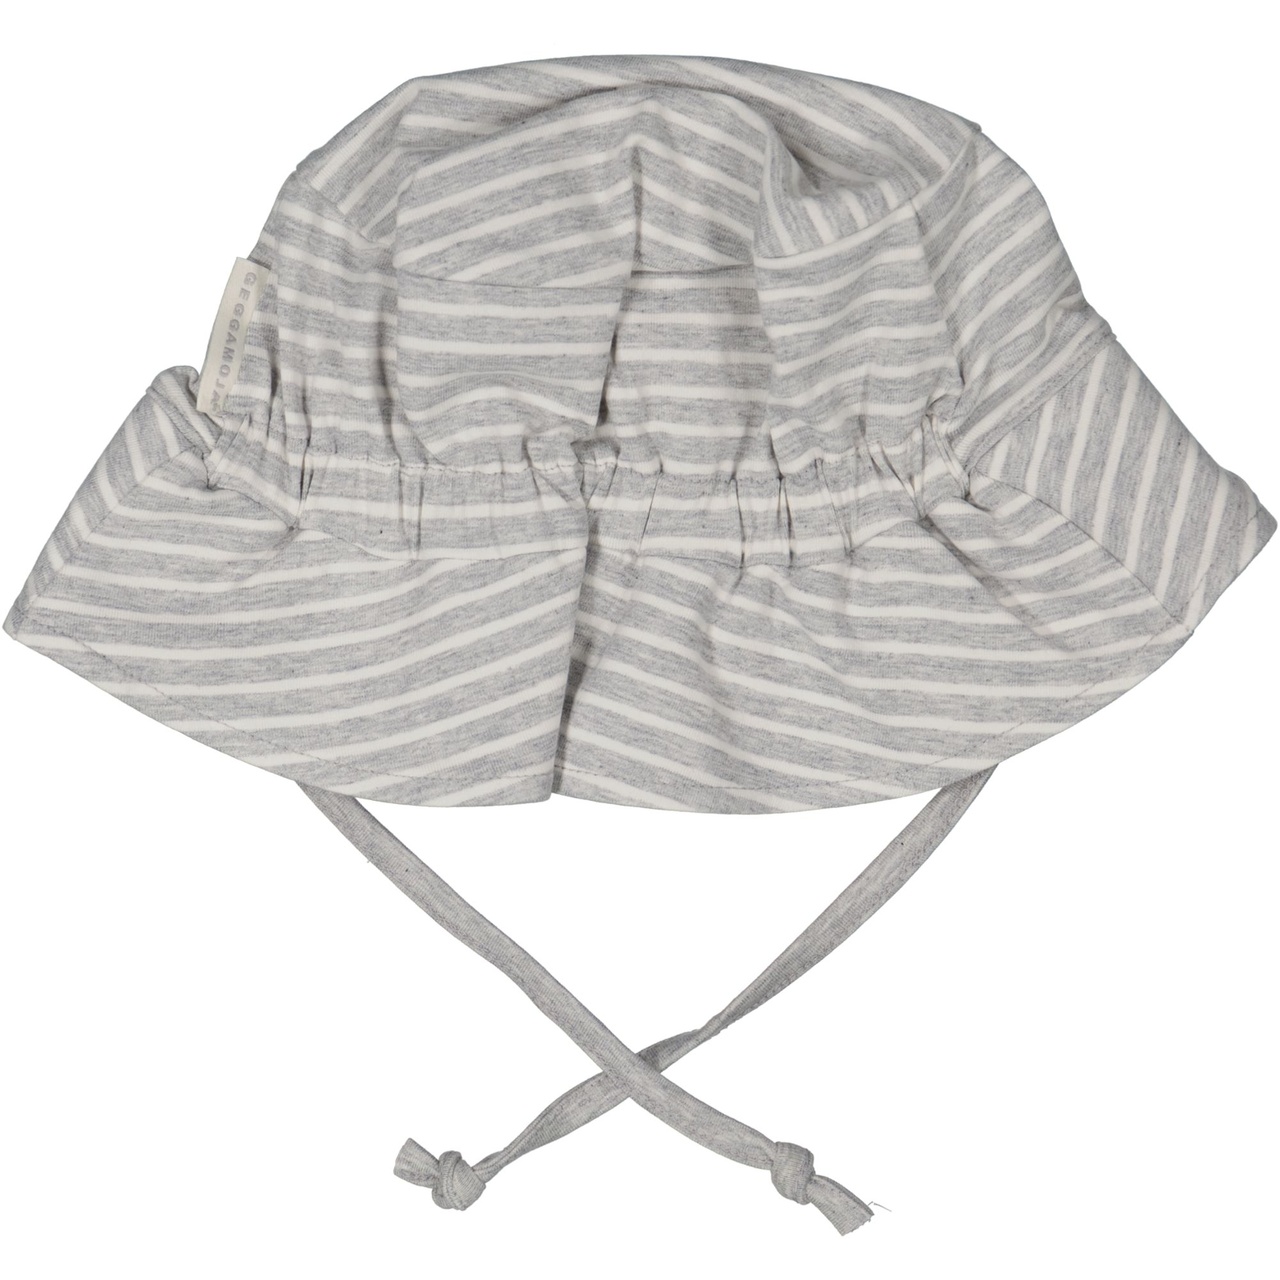 UV Sunny hat Classic Grey mel/white 4-10M